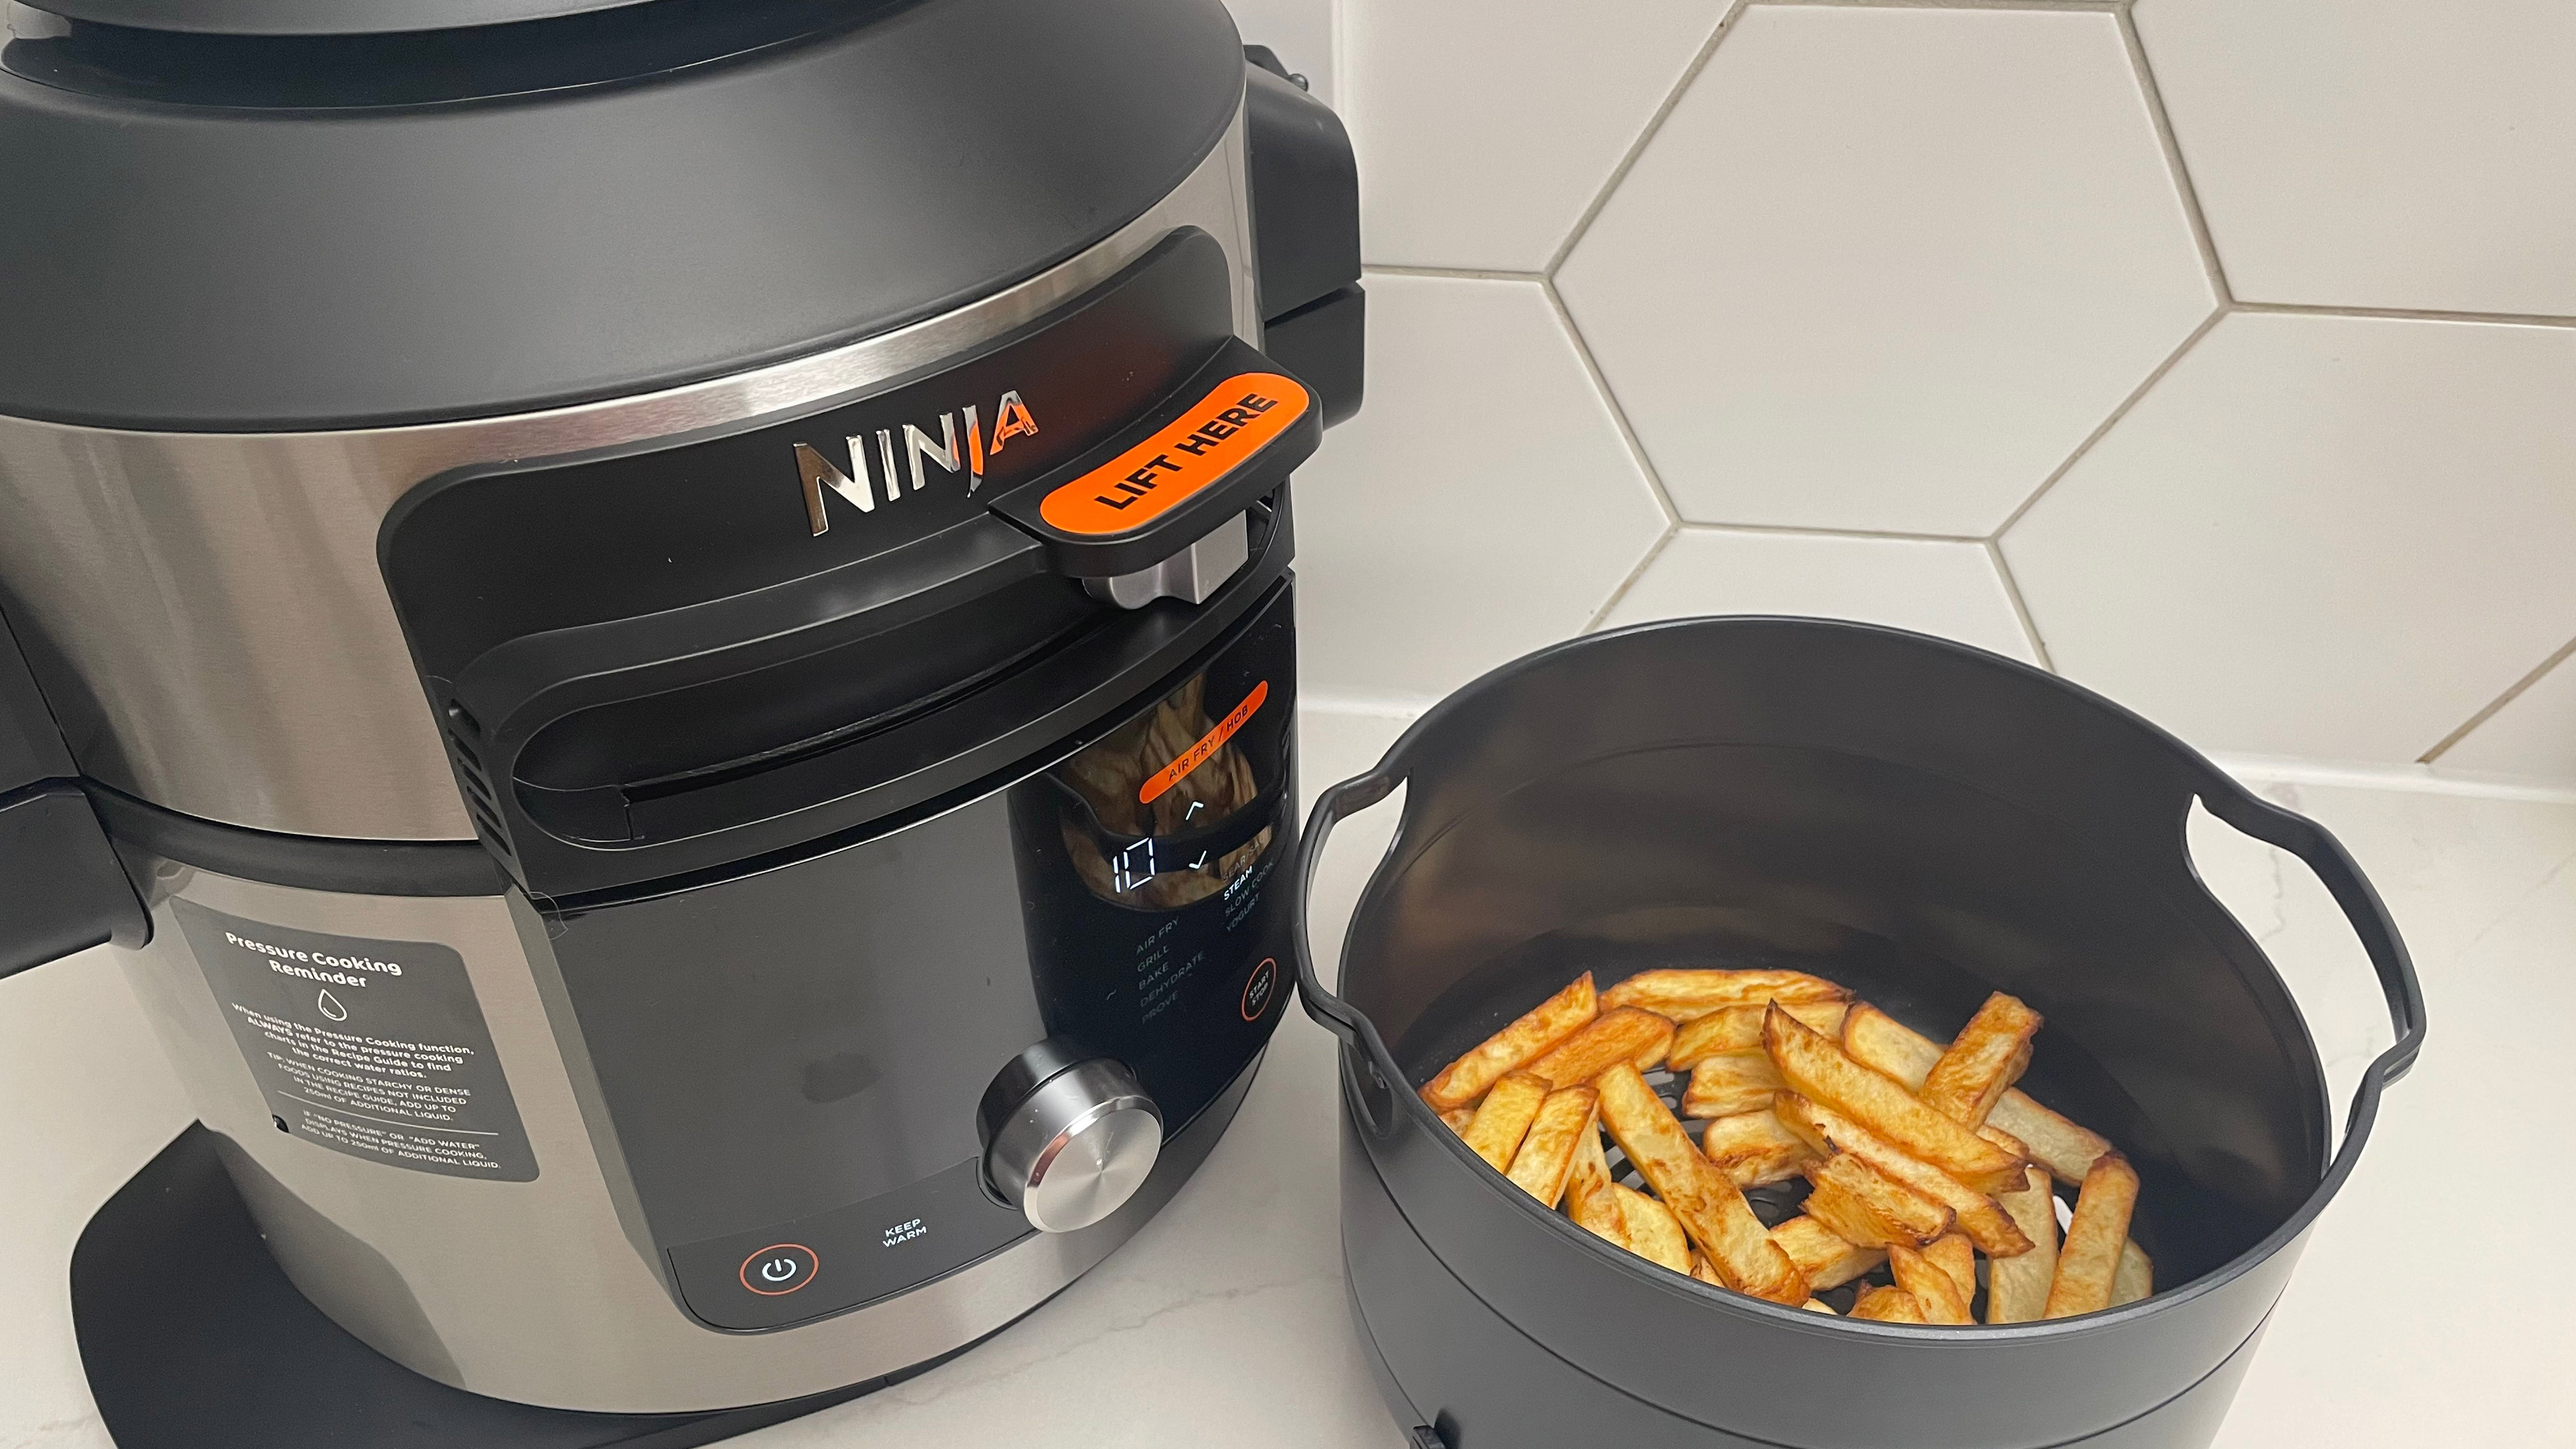 Ninja Foodi 15-in-1 SmartLid Multi-Cooker telah digunakan untuk menggoreng keripik